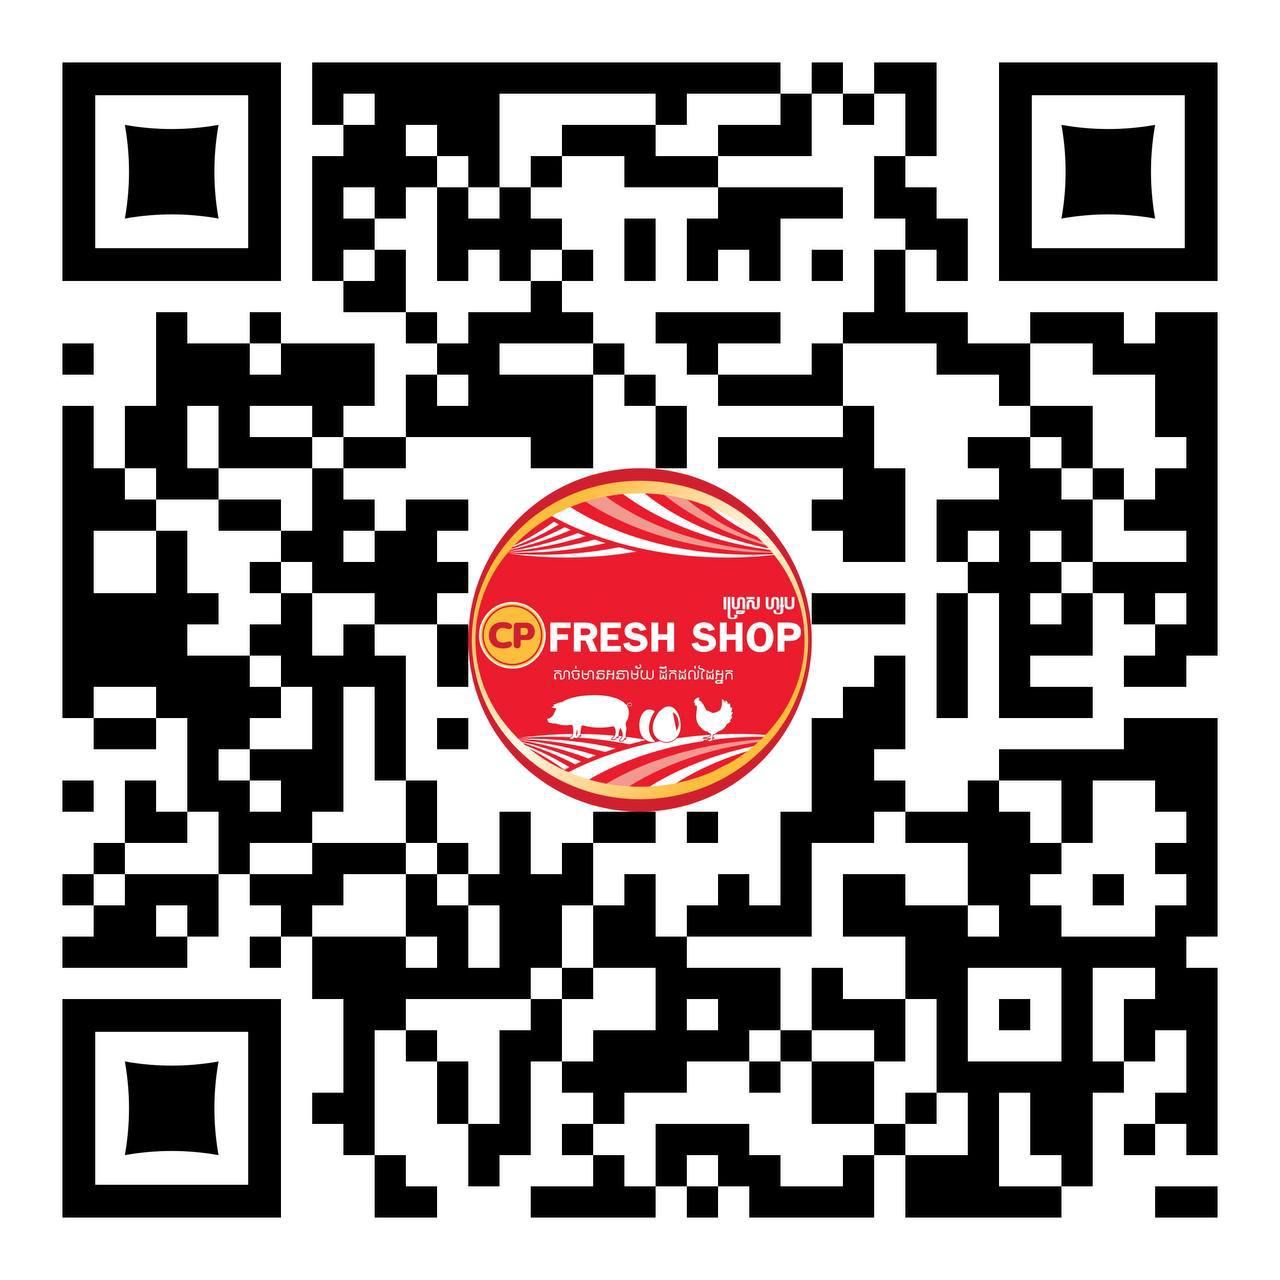 Cp Fresh Shop 004 Qr Code